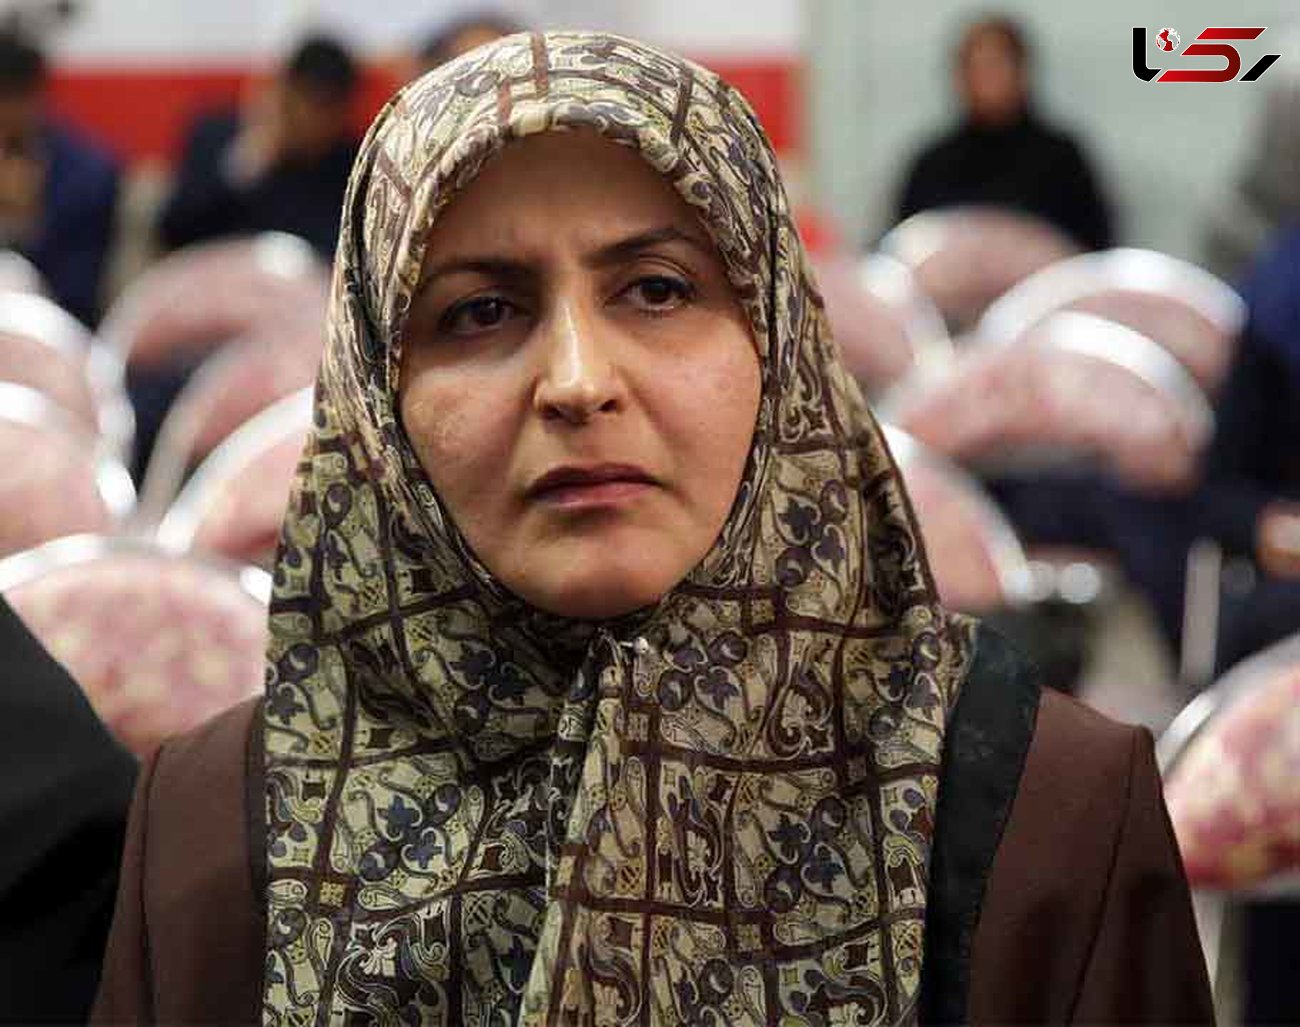 طیبه سیاوشی عضو کمیسیون فرهنگی مجلس: شهرزاد را با علاقه زیادی دنبال کرده ام